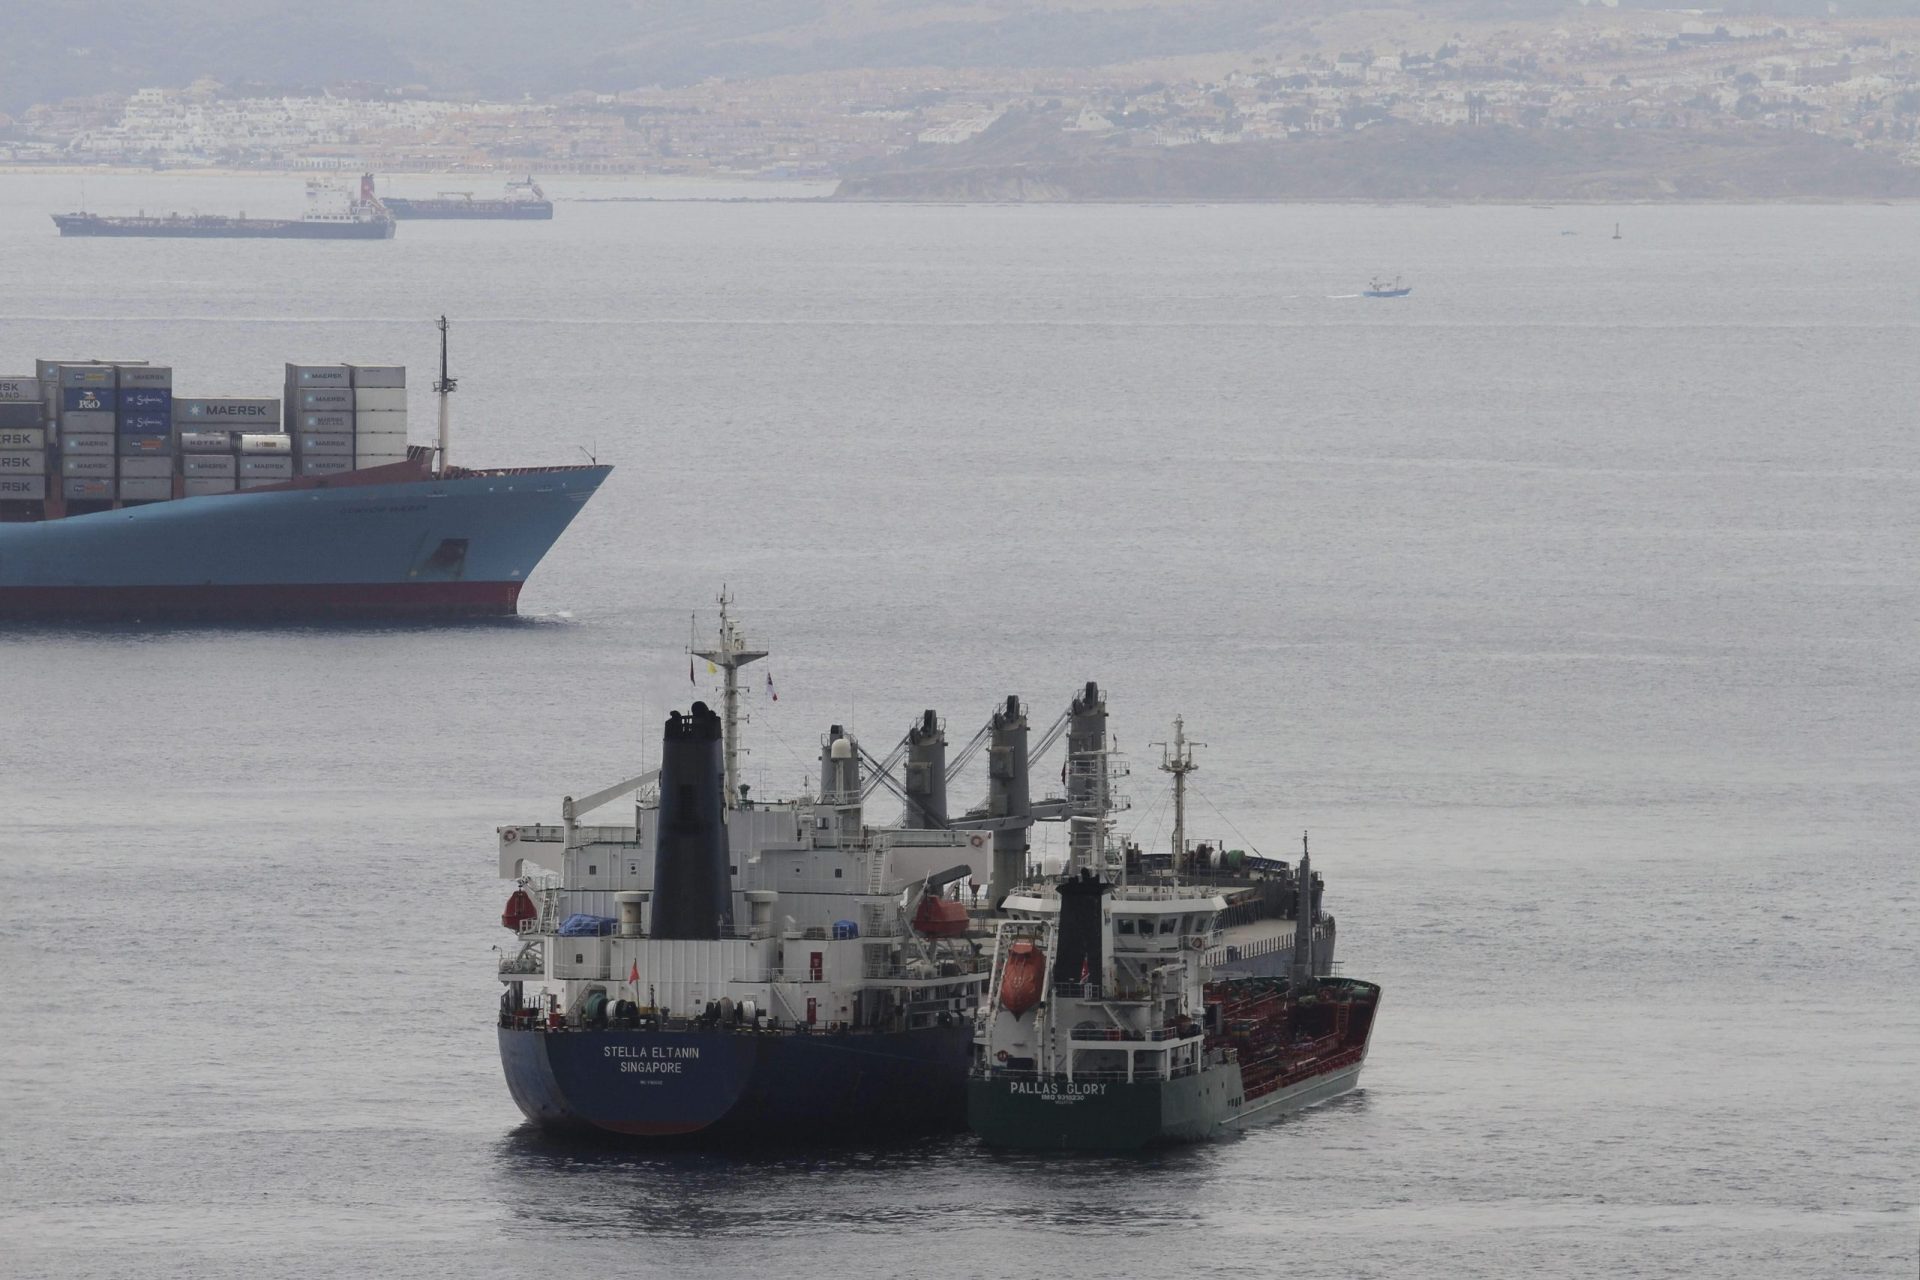 Imagen tomadas desde el peñón de Gibraltar en agosto de 2013 de barcos realizando bunkering (repostaje en el mar)en la bahía de Algeciras (Cádiz).